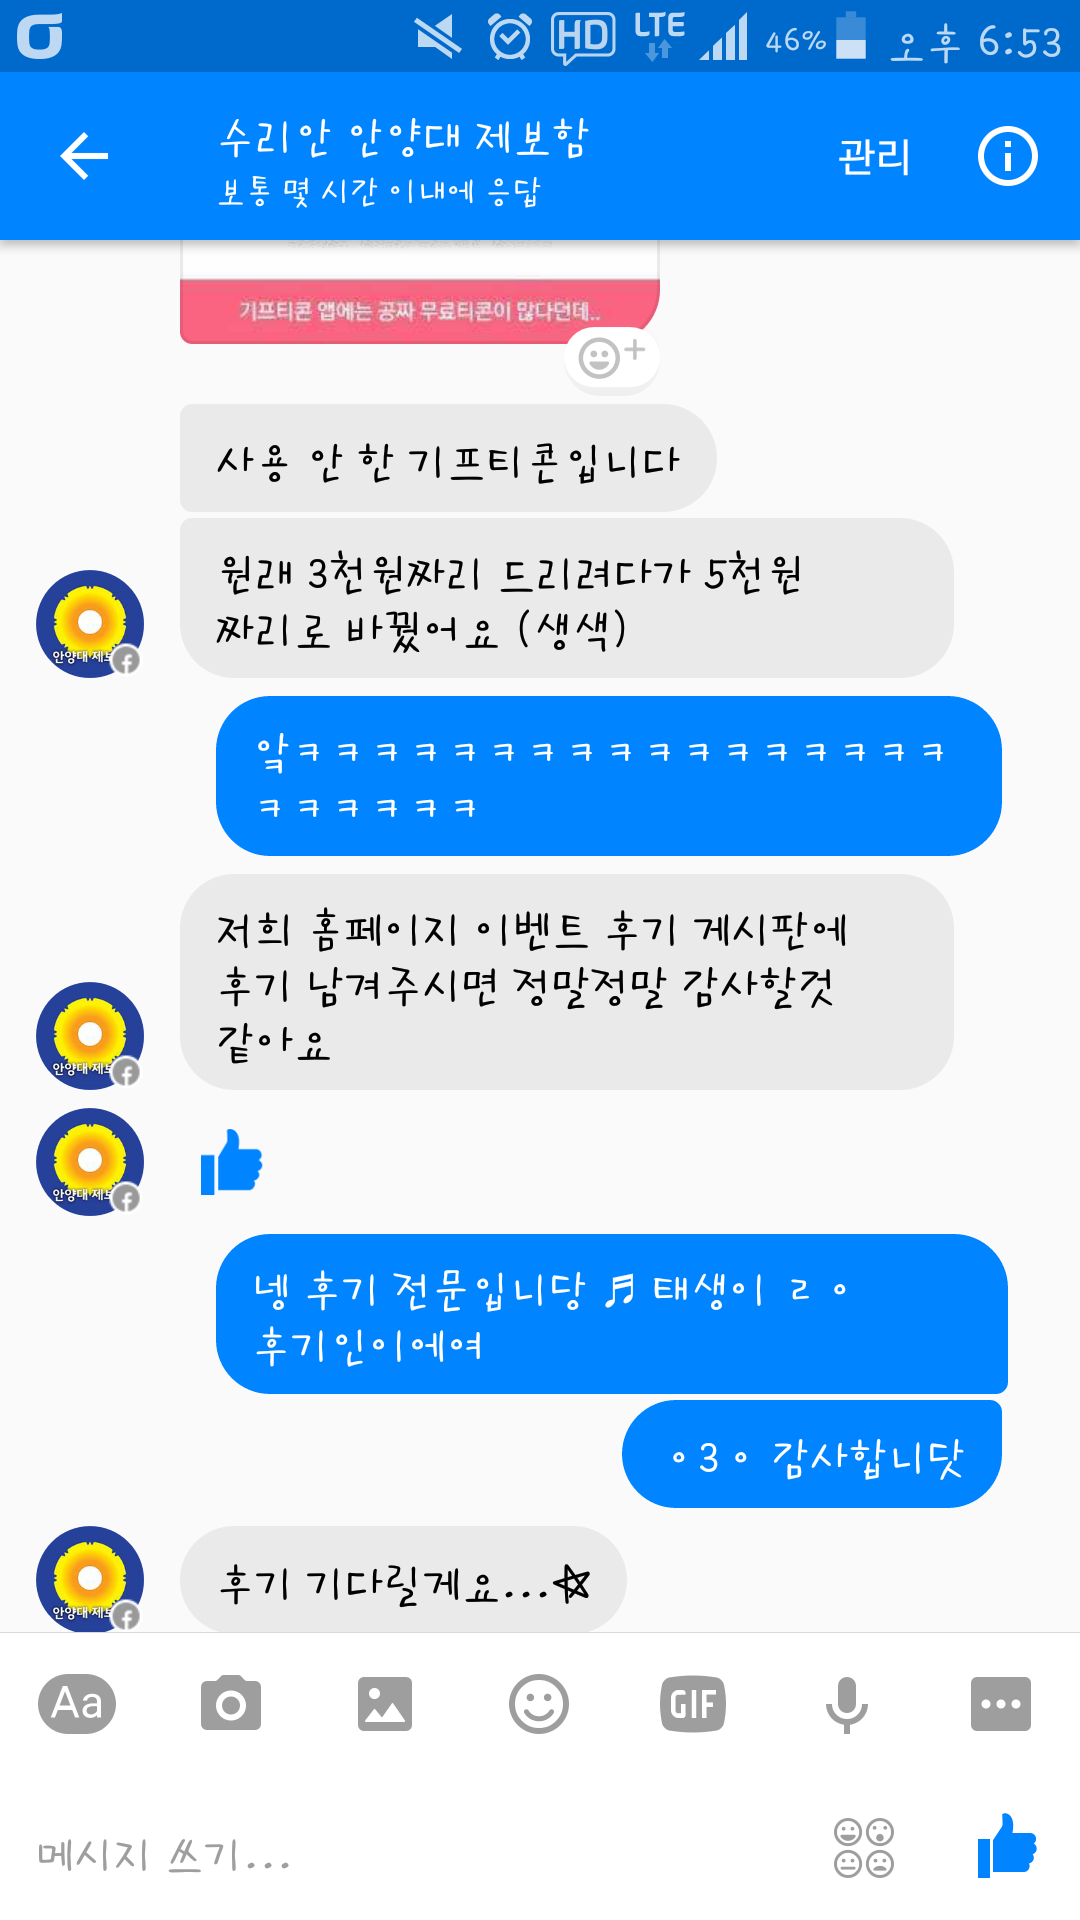 Screenshot_2017-04-03-18-53-53.png : 만우절 허언증 이벤트 당첨 후기입니닷♥!!